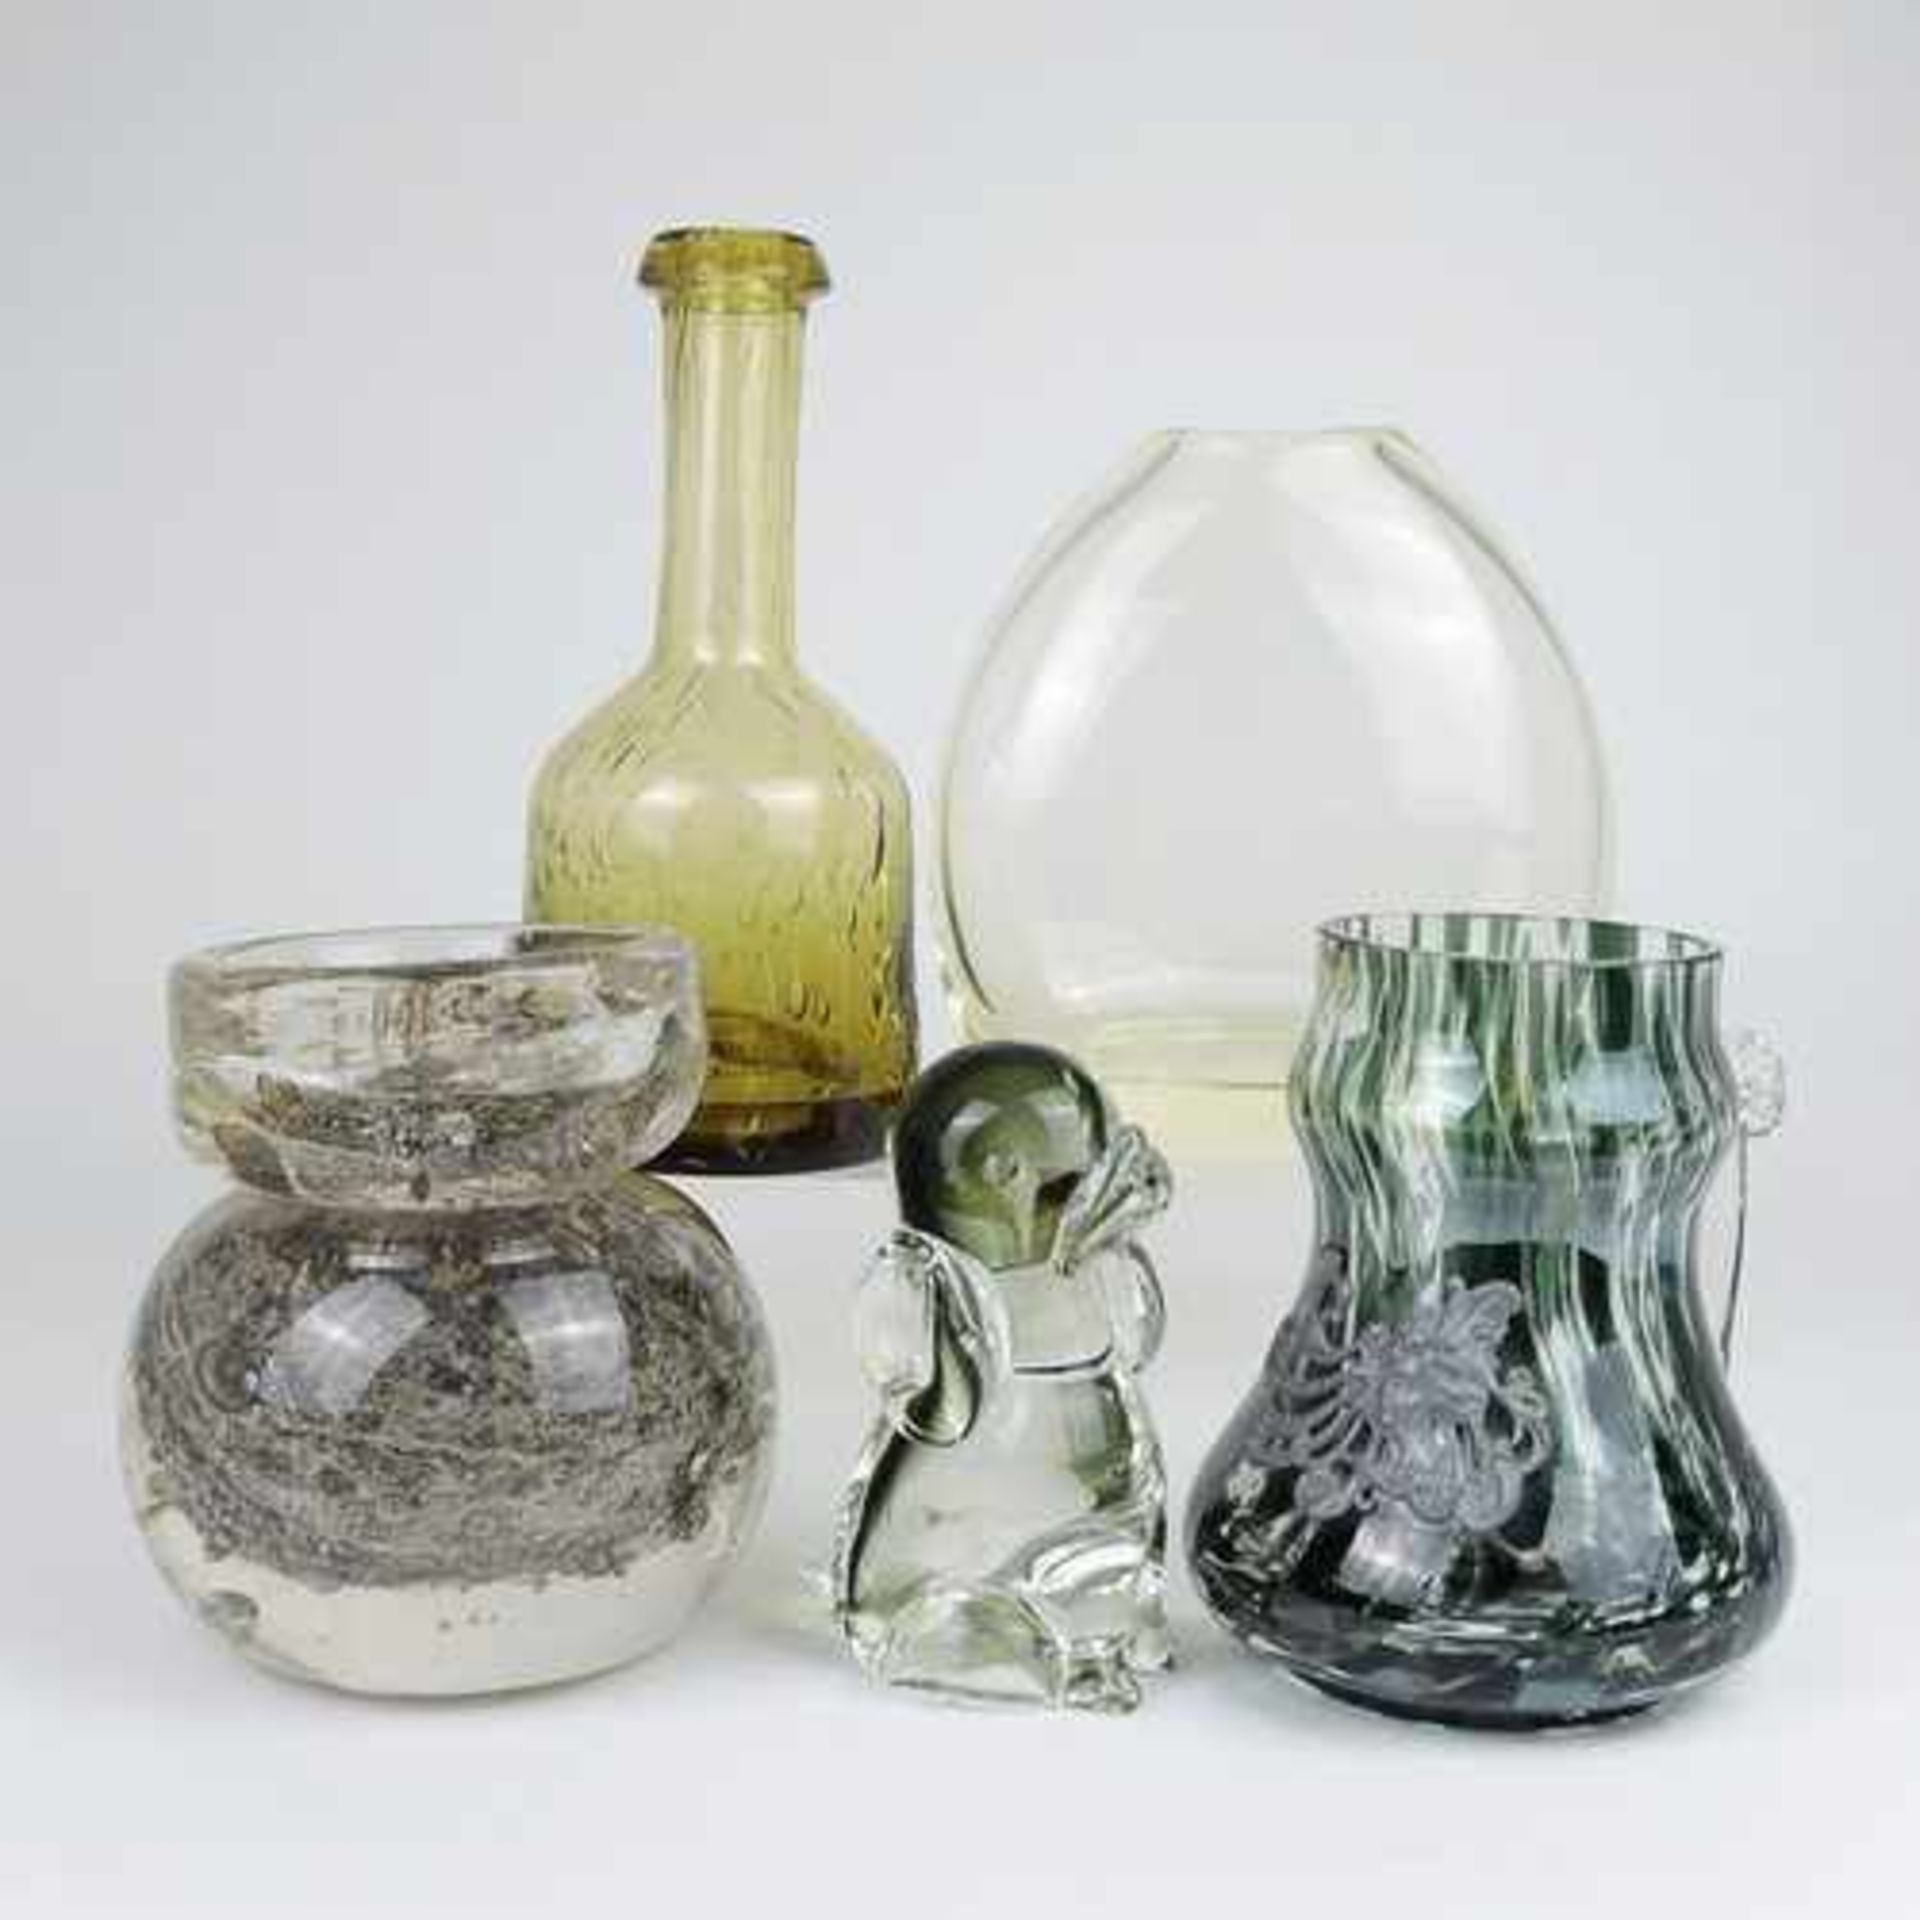 Konvolut 5 St., Vasen, Krug u. Zierobjekt, untersch. Formen u. Größen, farbloses Glas, part. braun